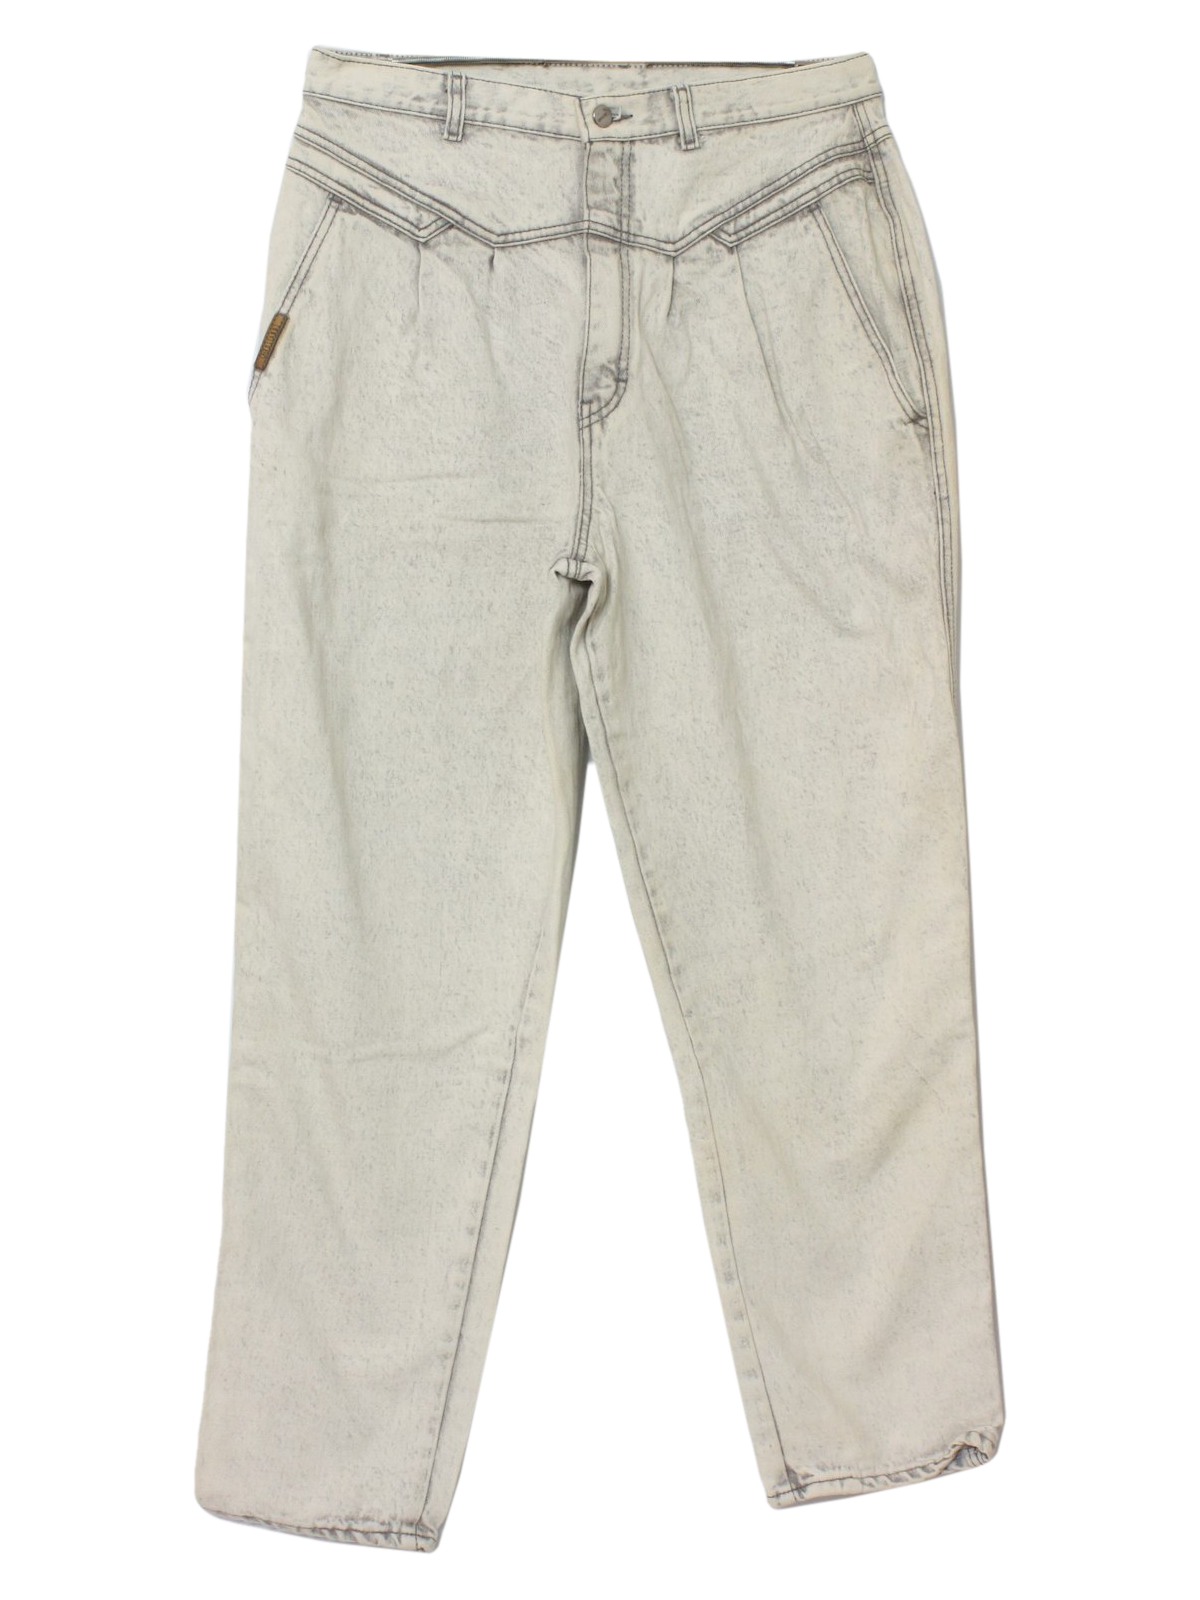 90s Retro Pants: 90s -Gitano- Womens soft grey background acid washed ...